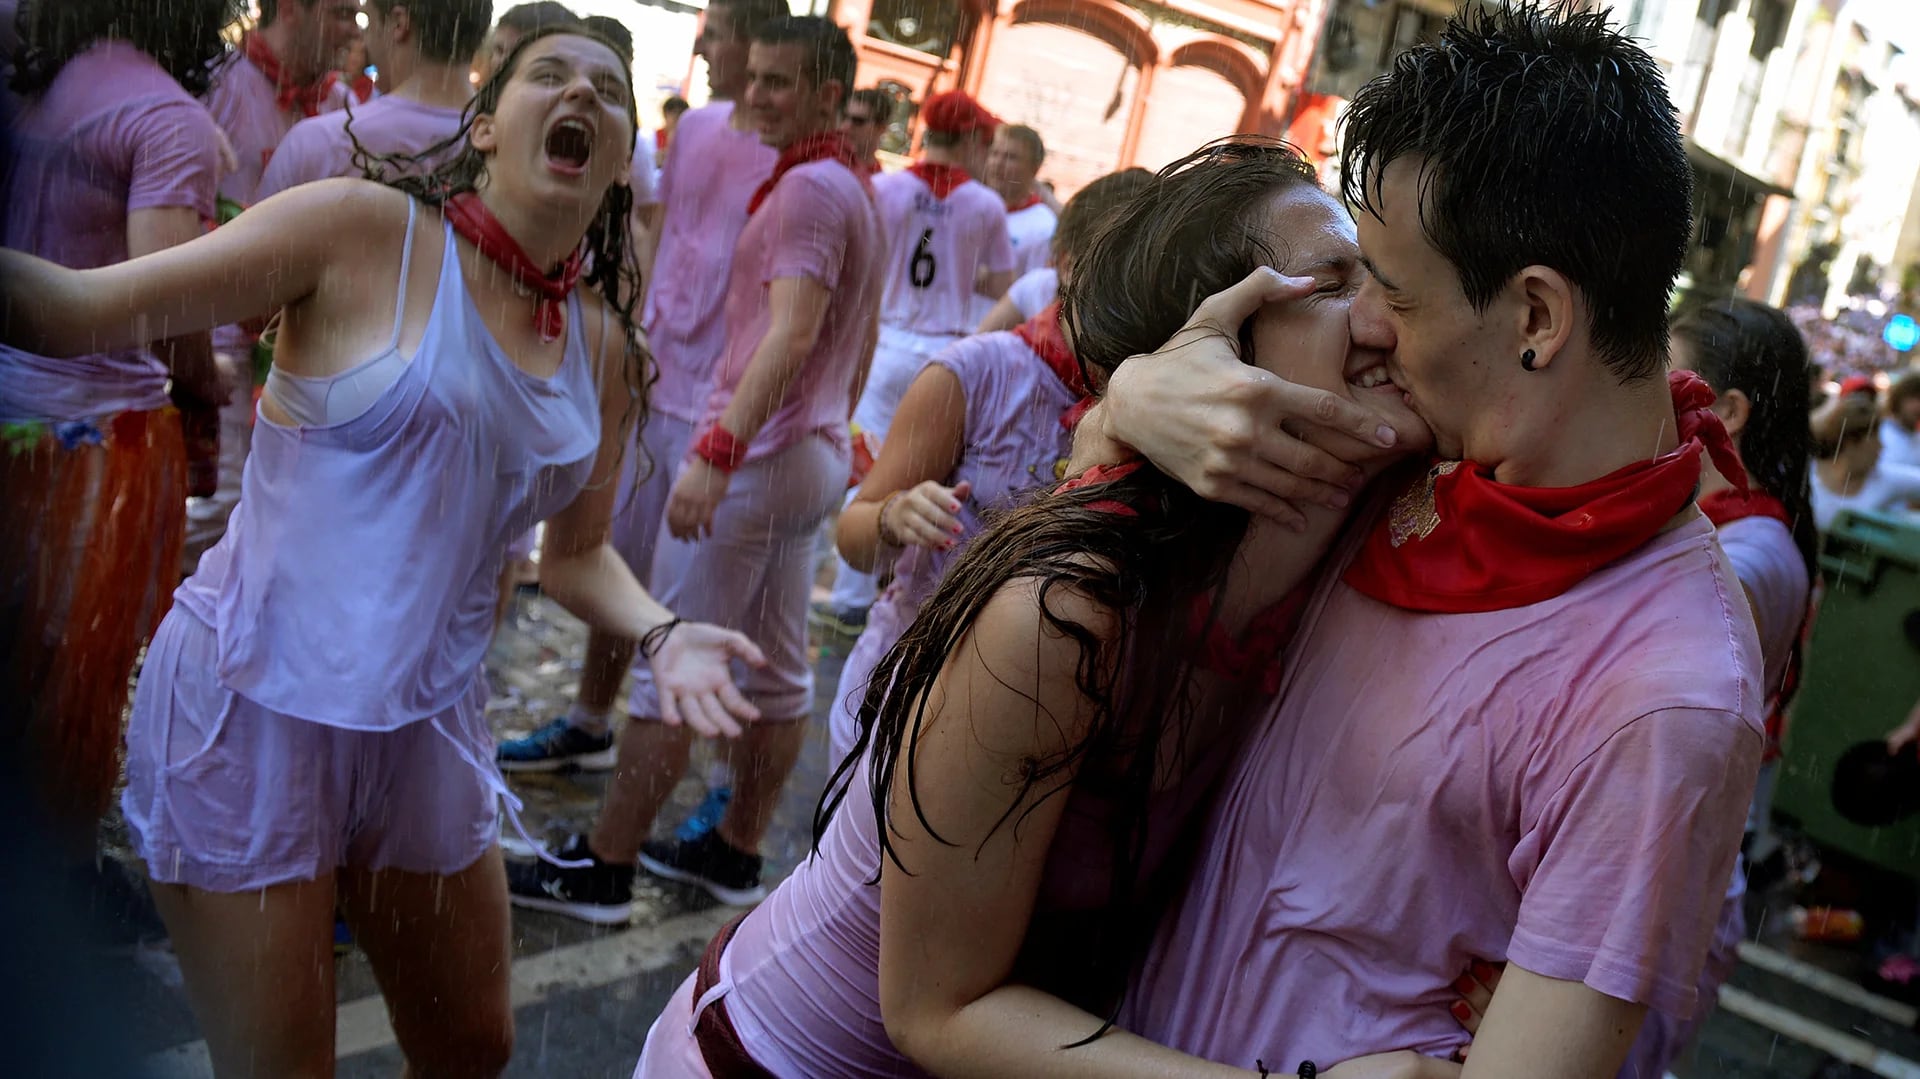 En los últimos años se popularizaron imágenes públicas de tocamientos a mujeres en San Fermín. (Reuters)